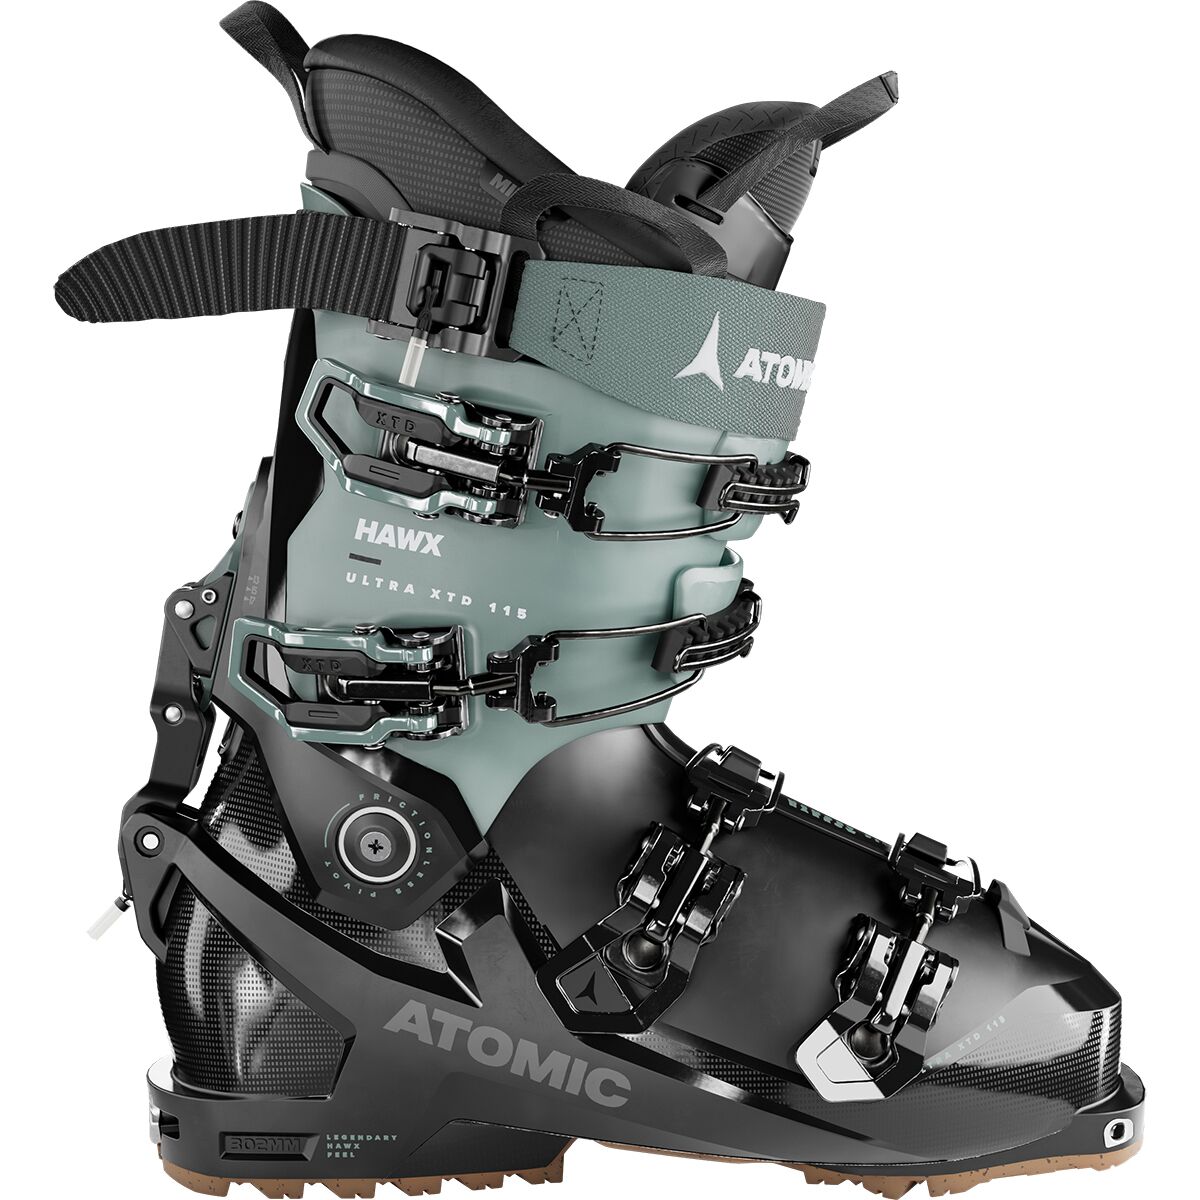 Ботинки hawx ultra xtd 115 gw — 2024 г. Atomic, цвет black/aqua ботинки женские atomic hawx ultra 115 sw gw лыжные чёрный